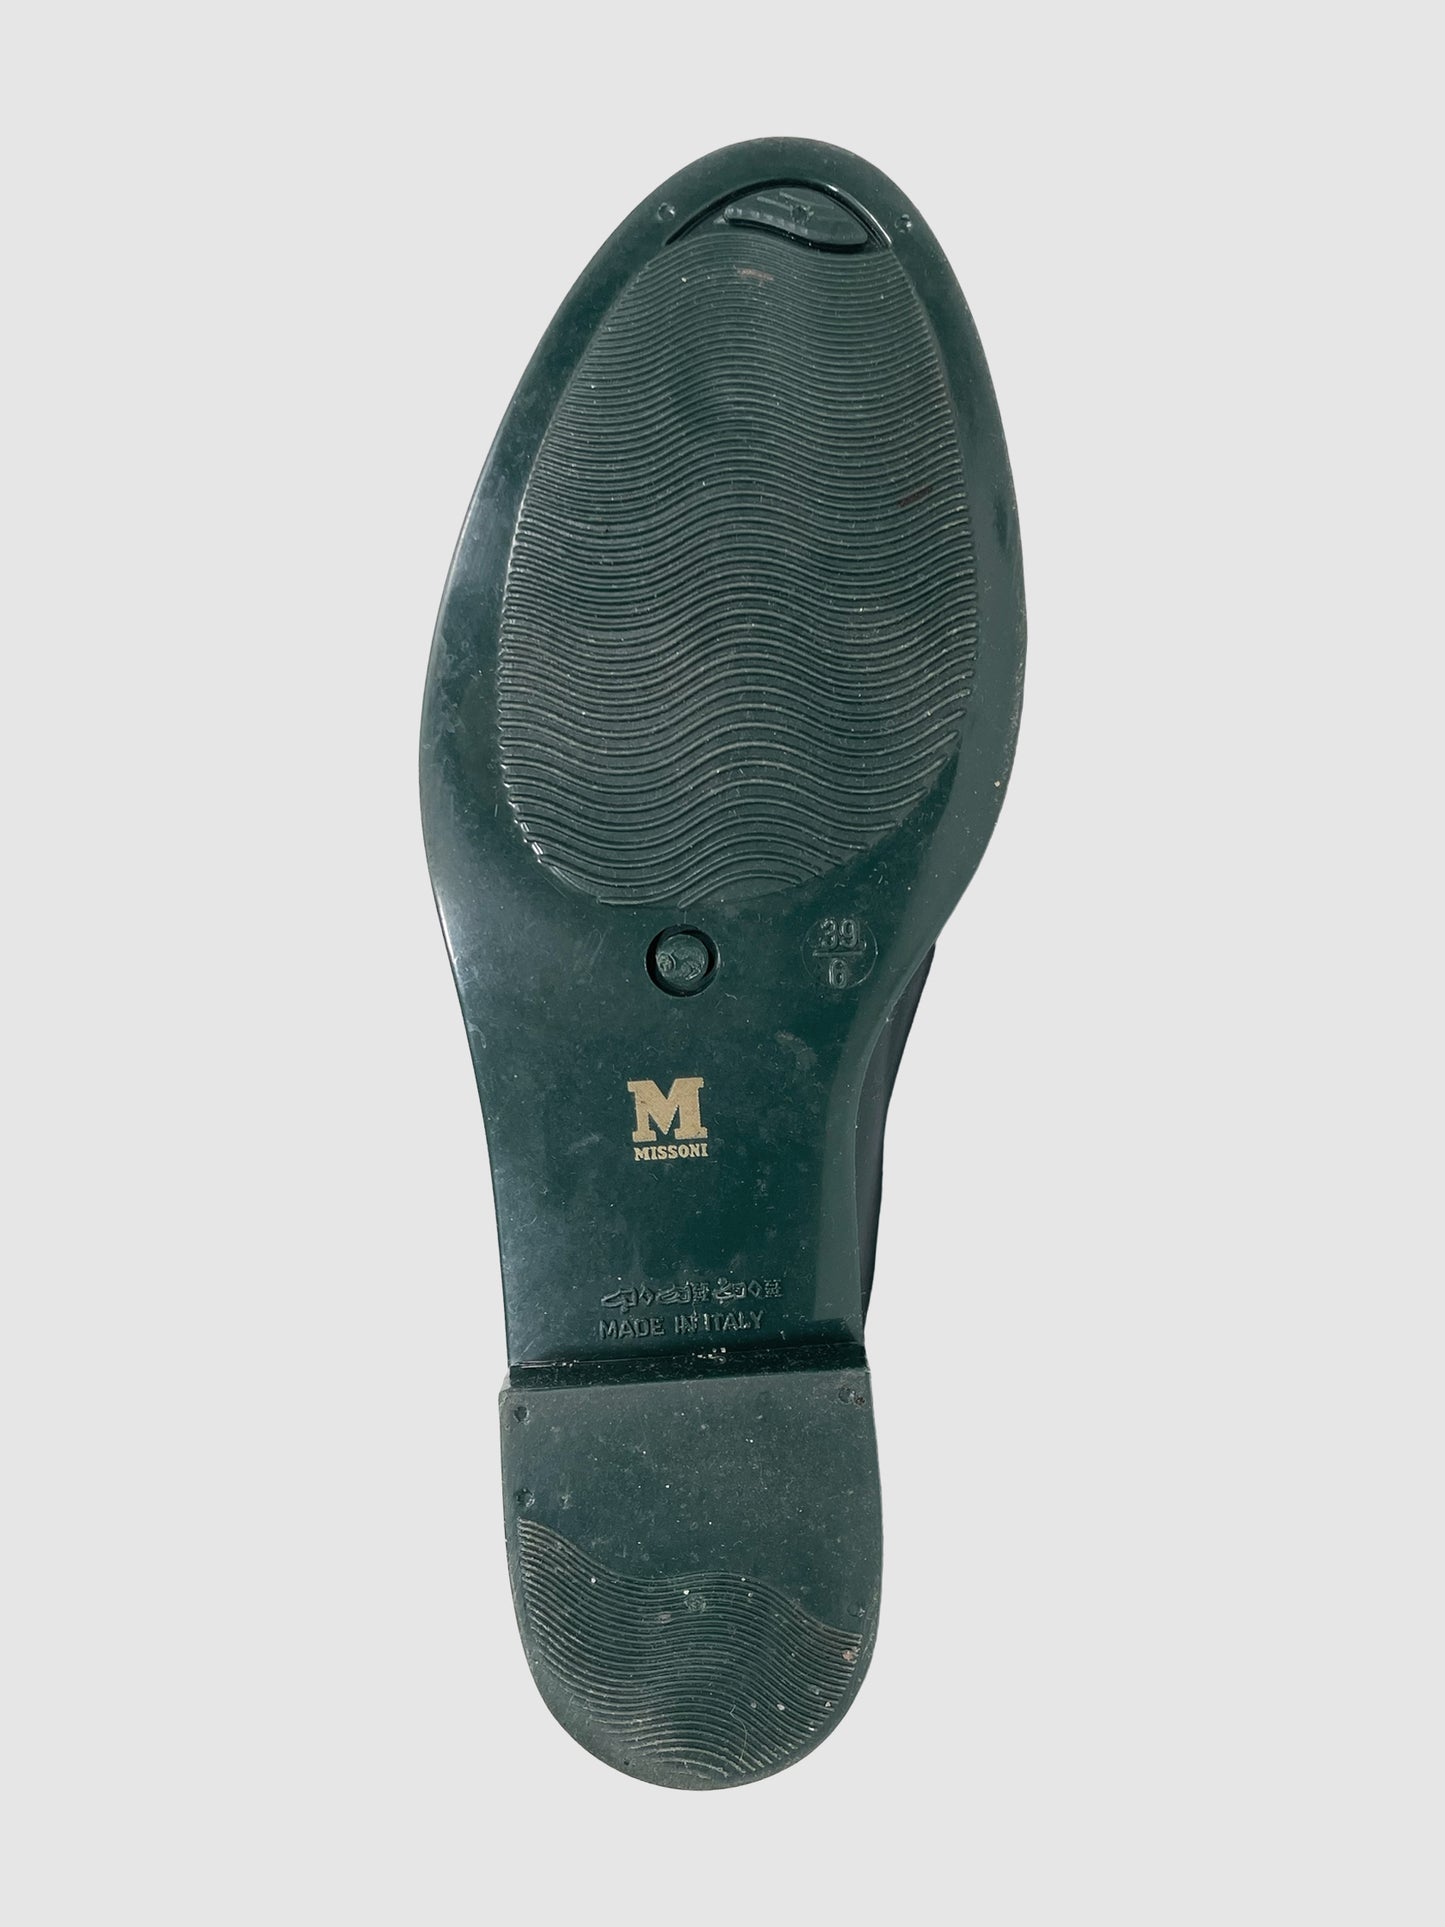 Missoni Green Rain Boots - Size 39